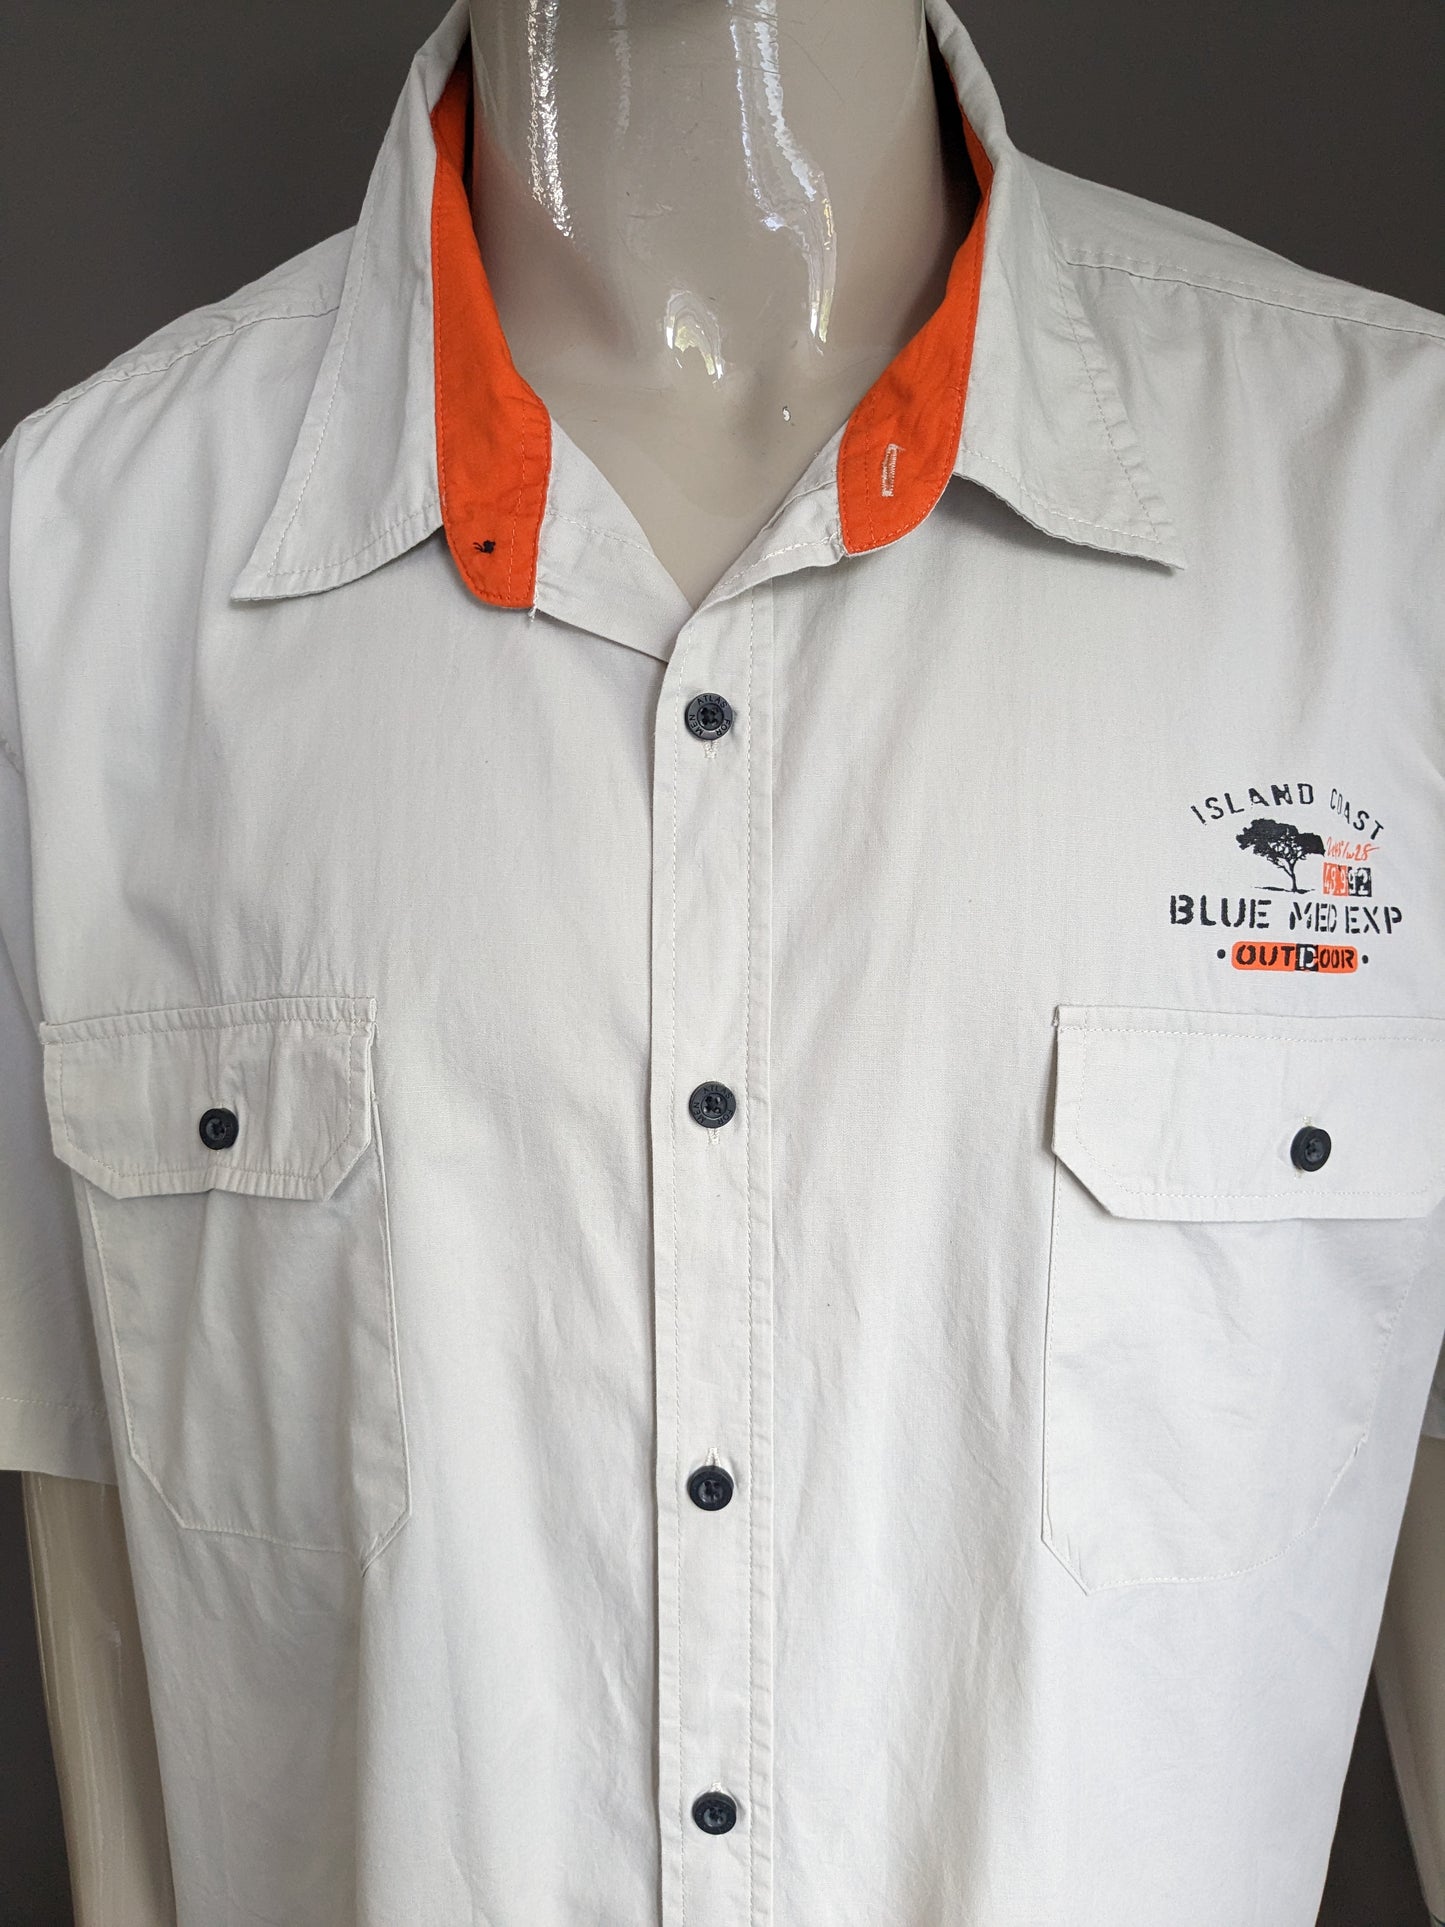 Atlas for men shirt short sleeve. Beige colored. Orange accents. Size 5XL / XXXXXL.